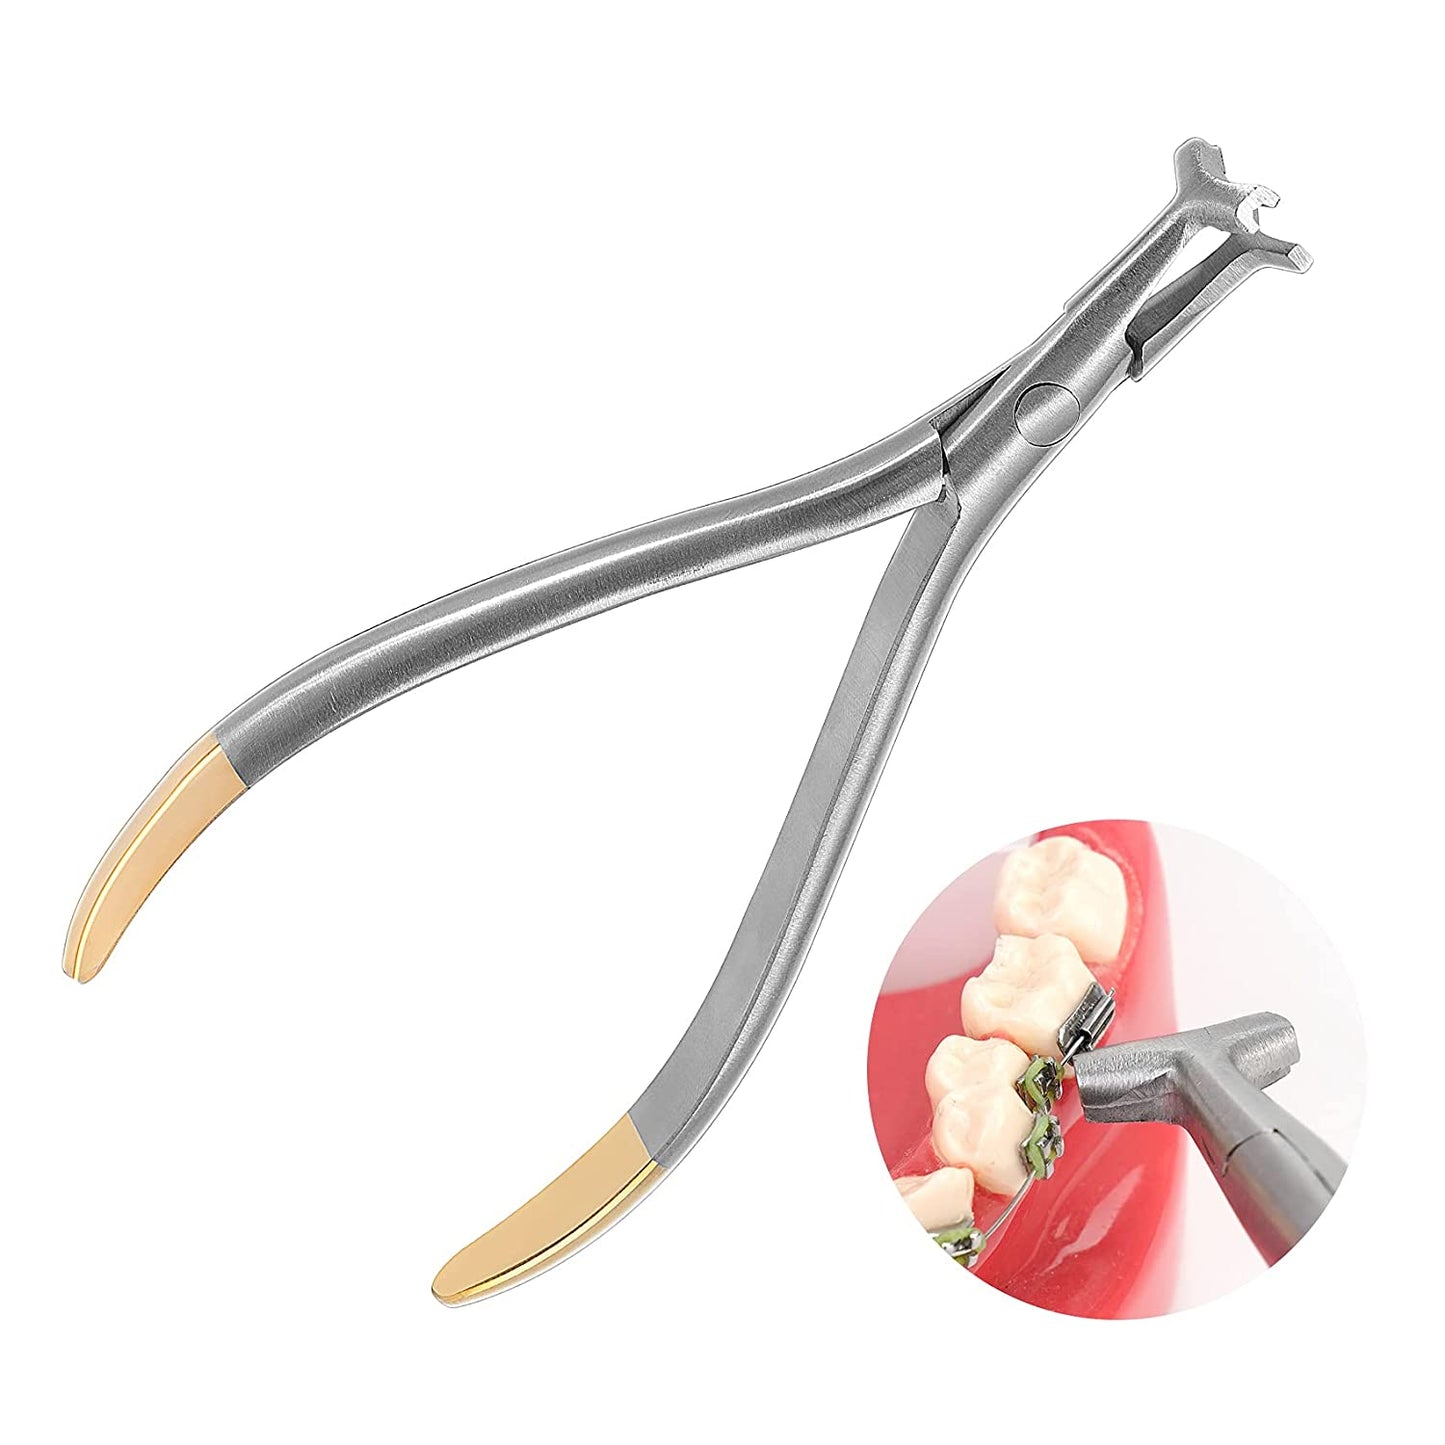 Dental Distal End Bending Plier, Orthodontic NiTi Bender Forceps Hammerhead Dental Tools Instrument